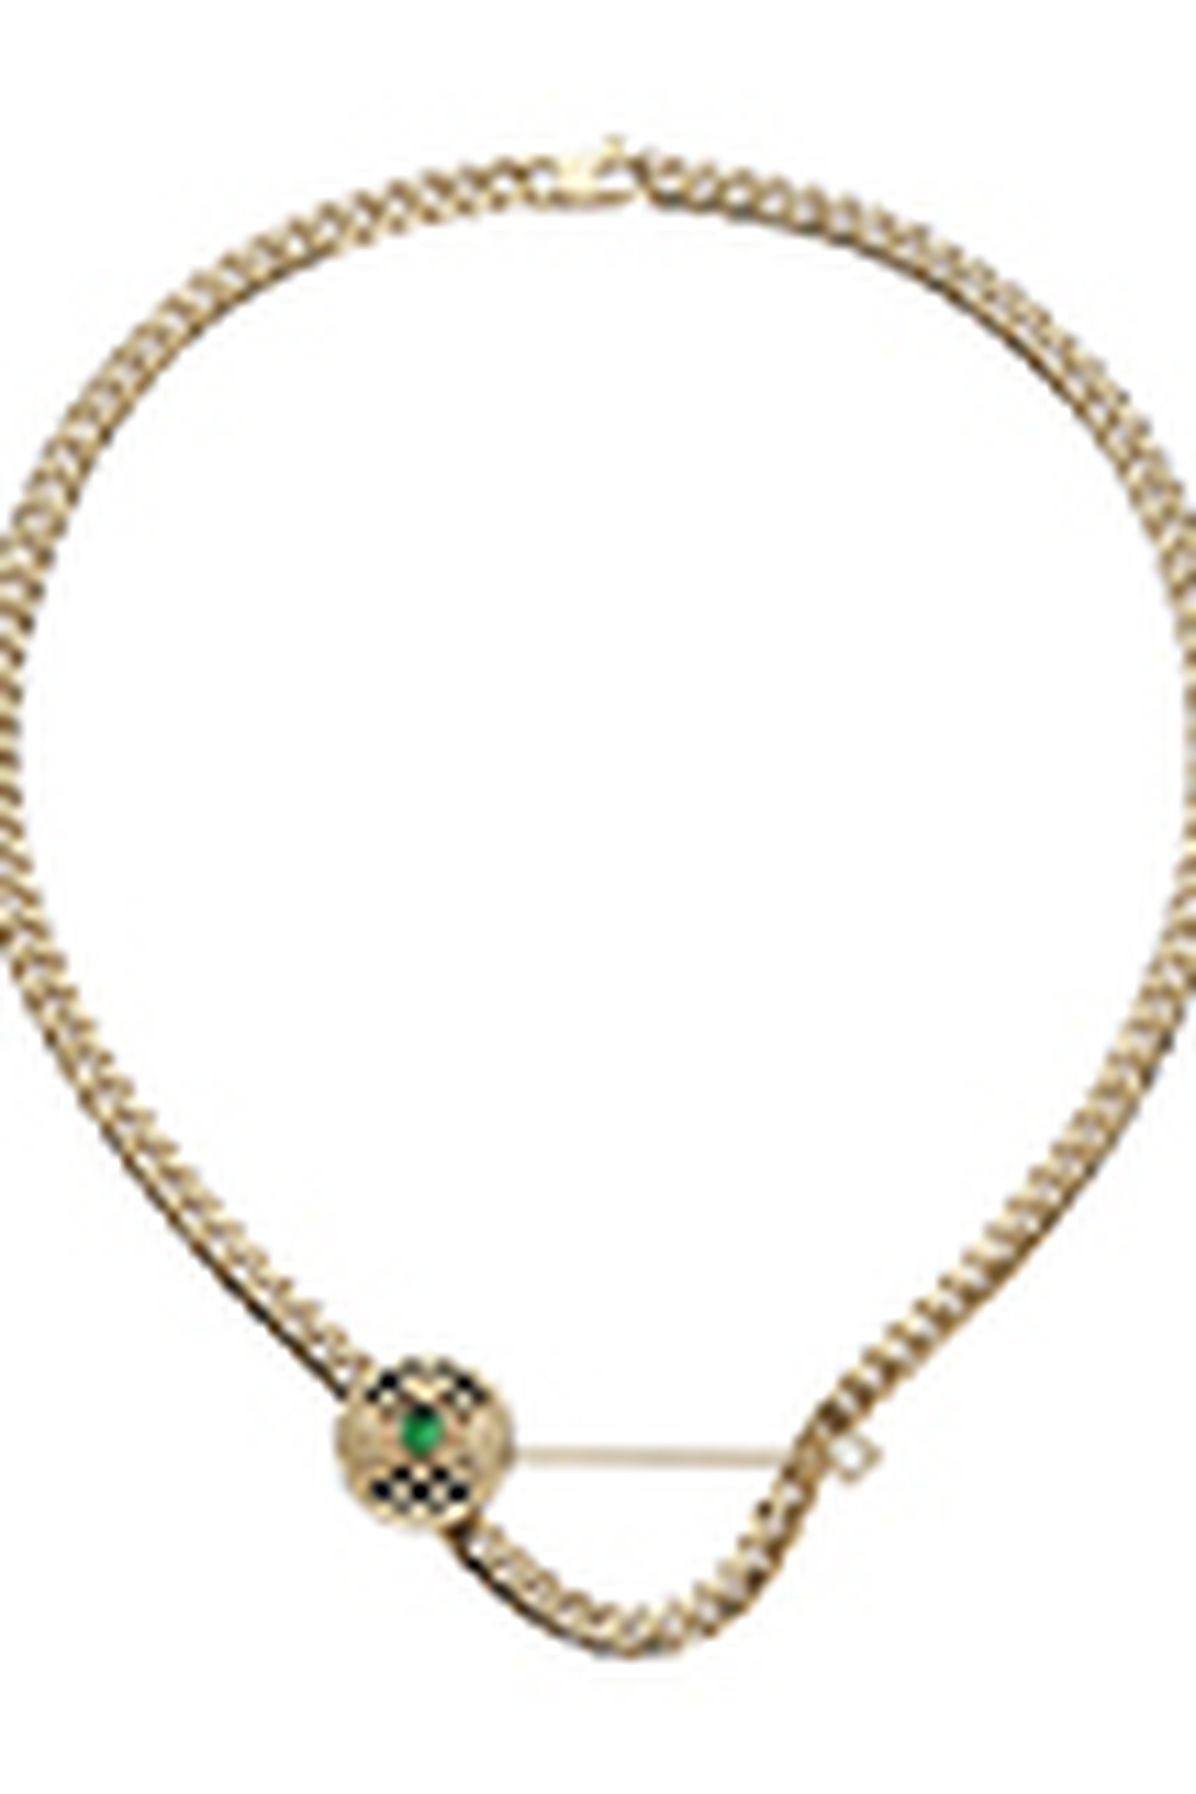 Balmain Emblem tie pin necklace